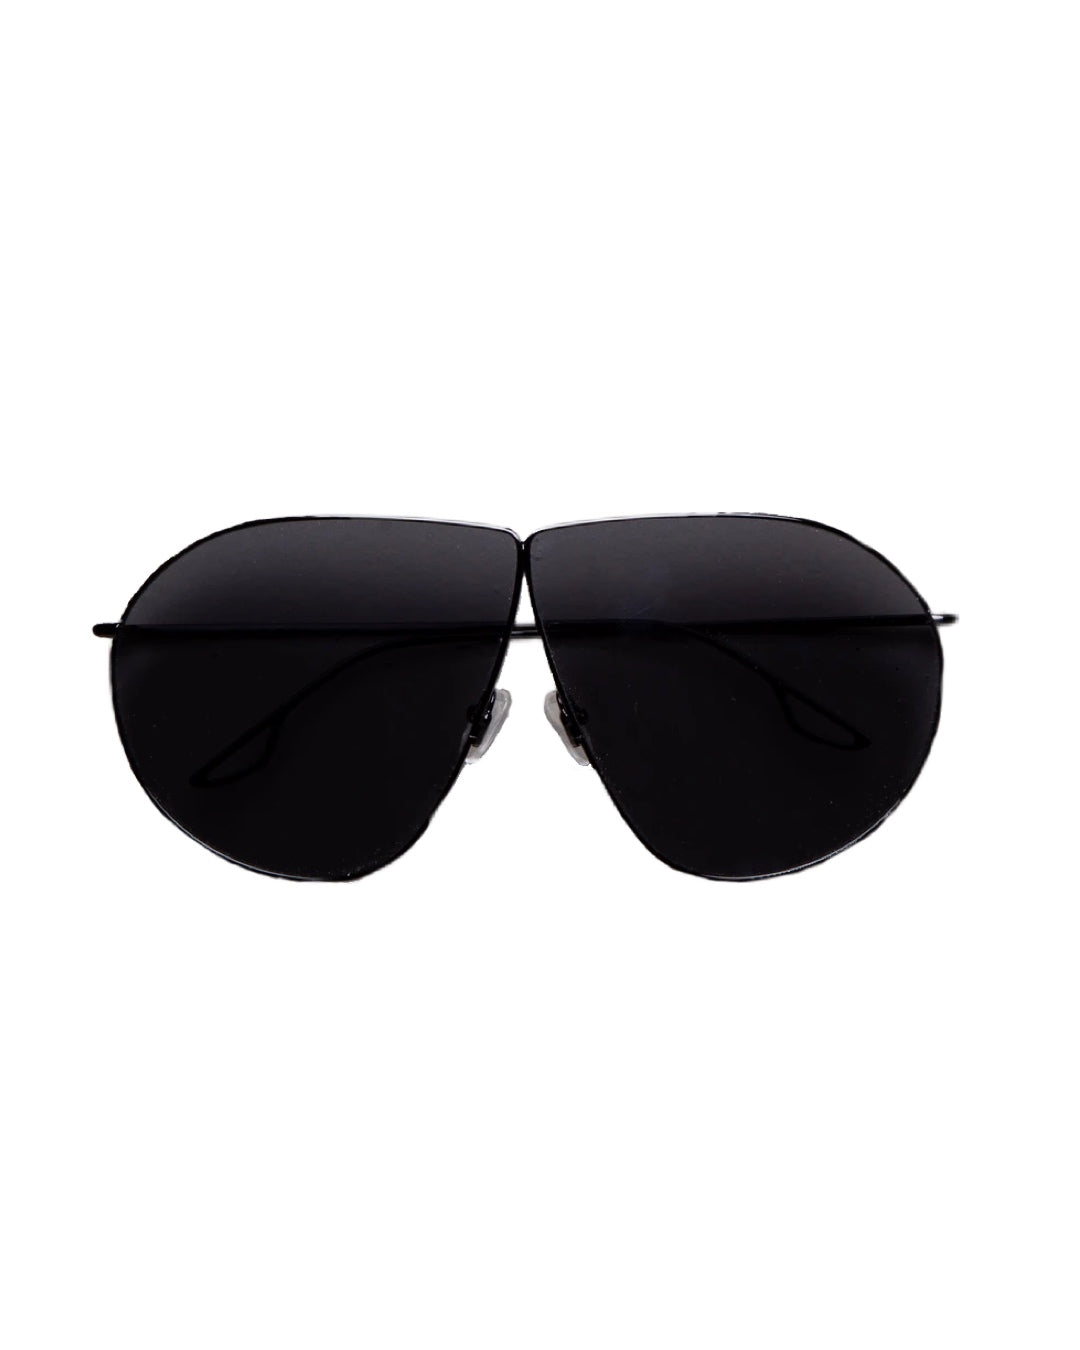 3NY - KRIS BLACK - Sunglasses